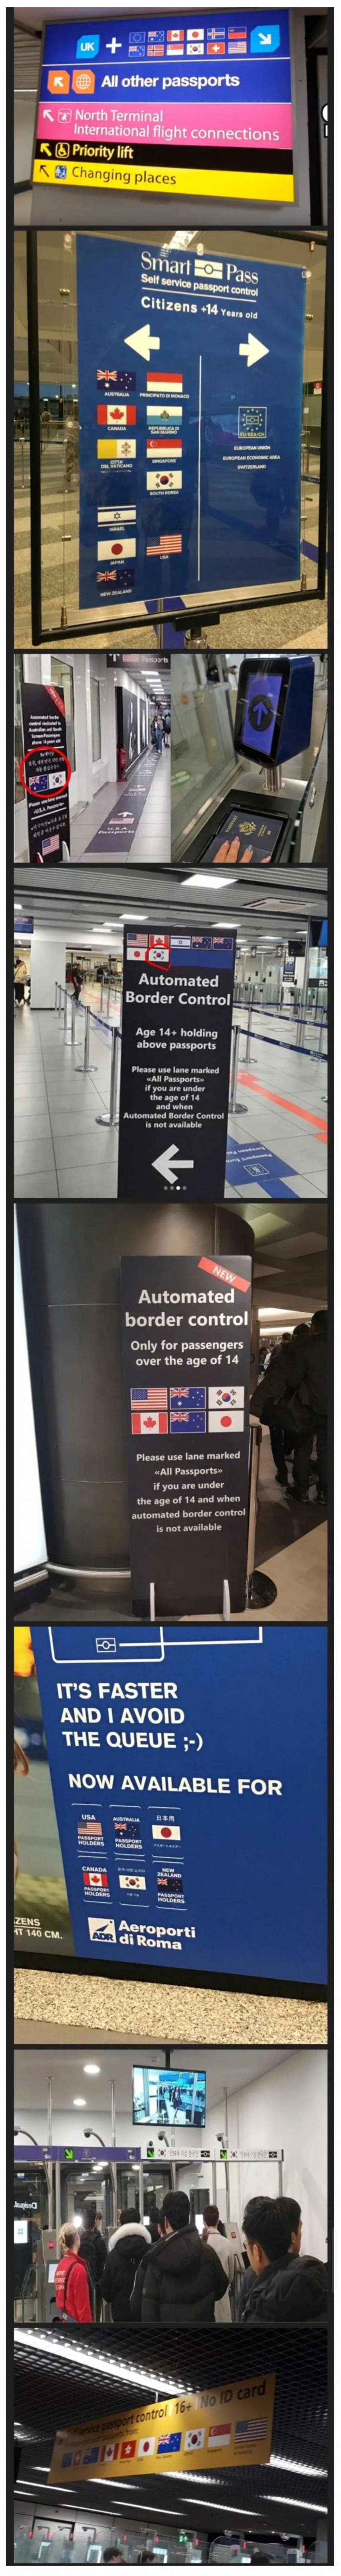 image.png 중국인이 해외 공항에서 느낀다는 열등감